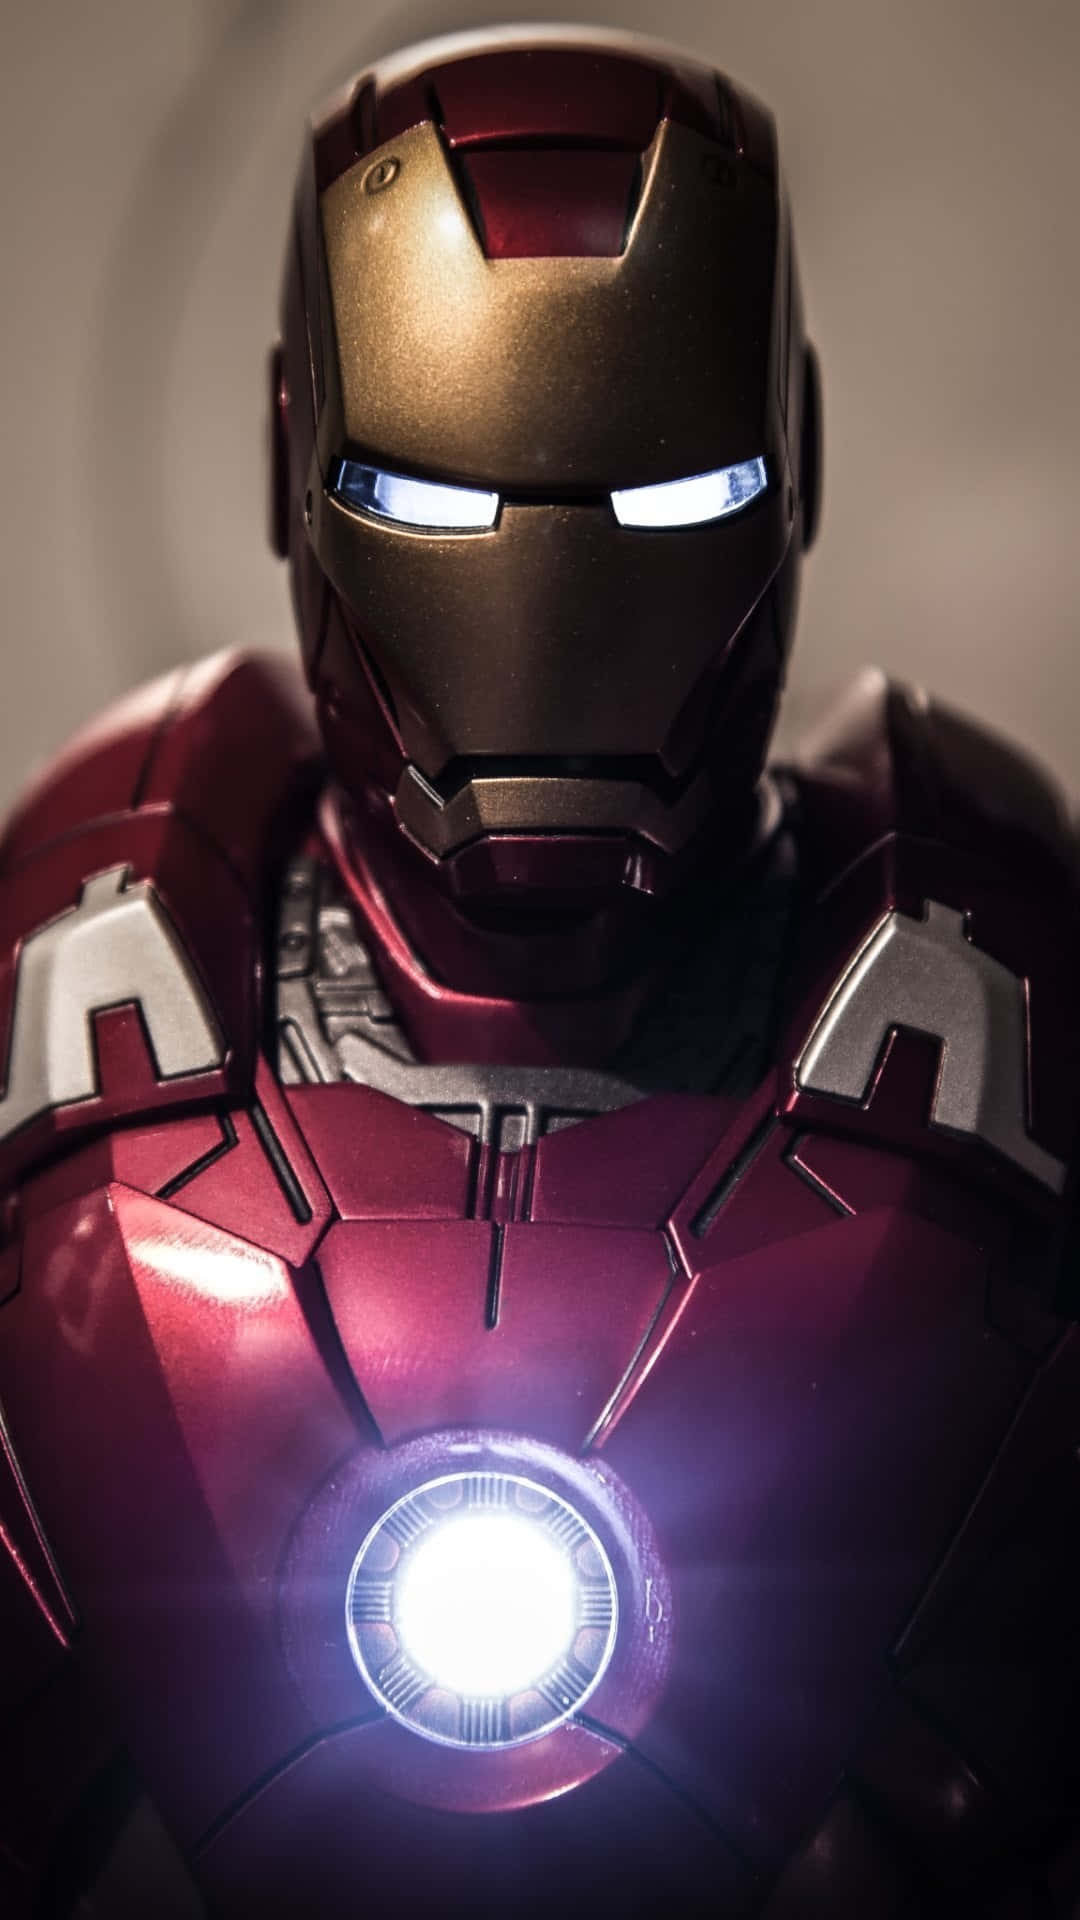 Vis din kærlighed til Iron Man med denne fantastiske Cool Iron Man Iphone tapet Wallpaper